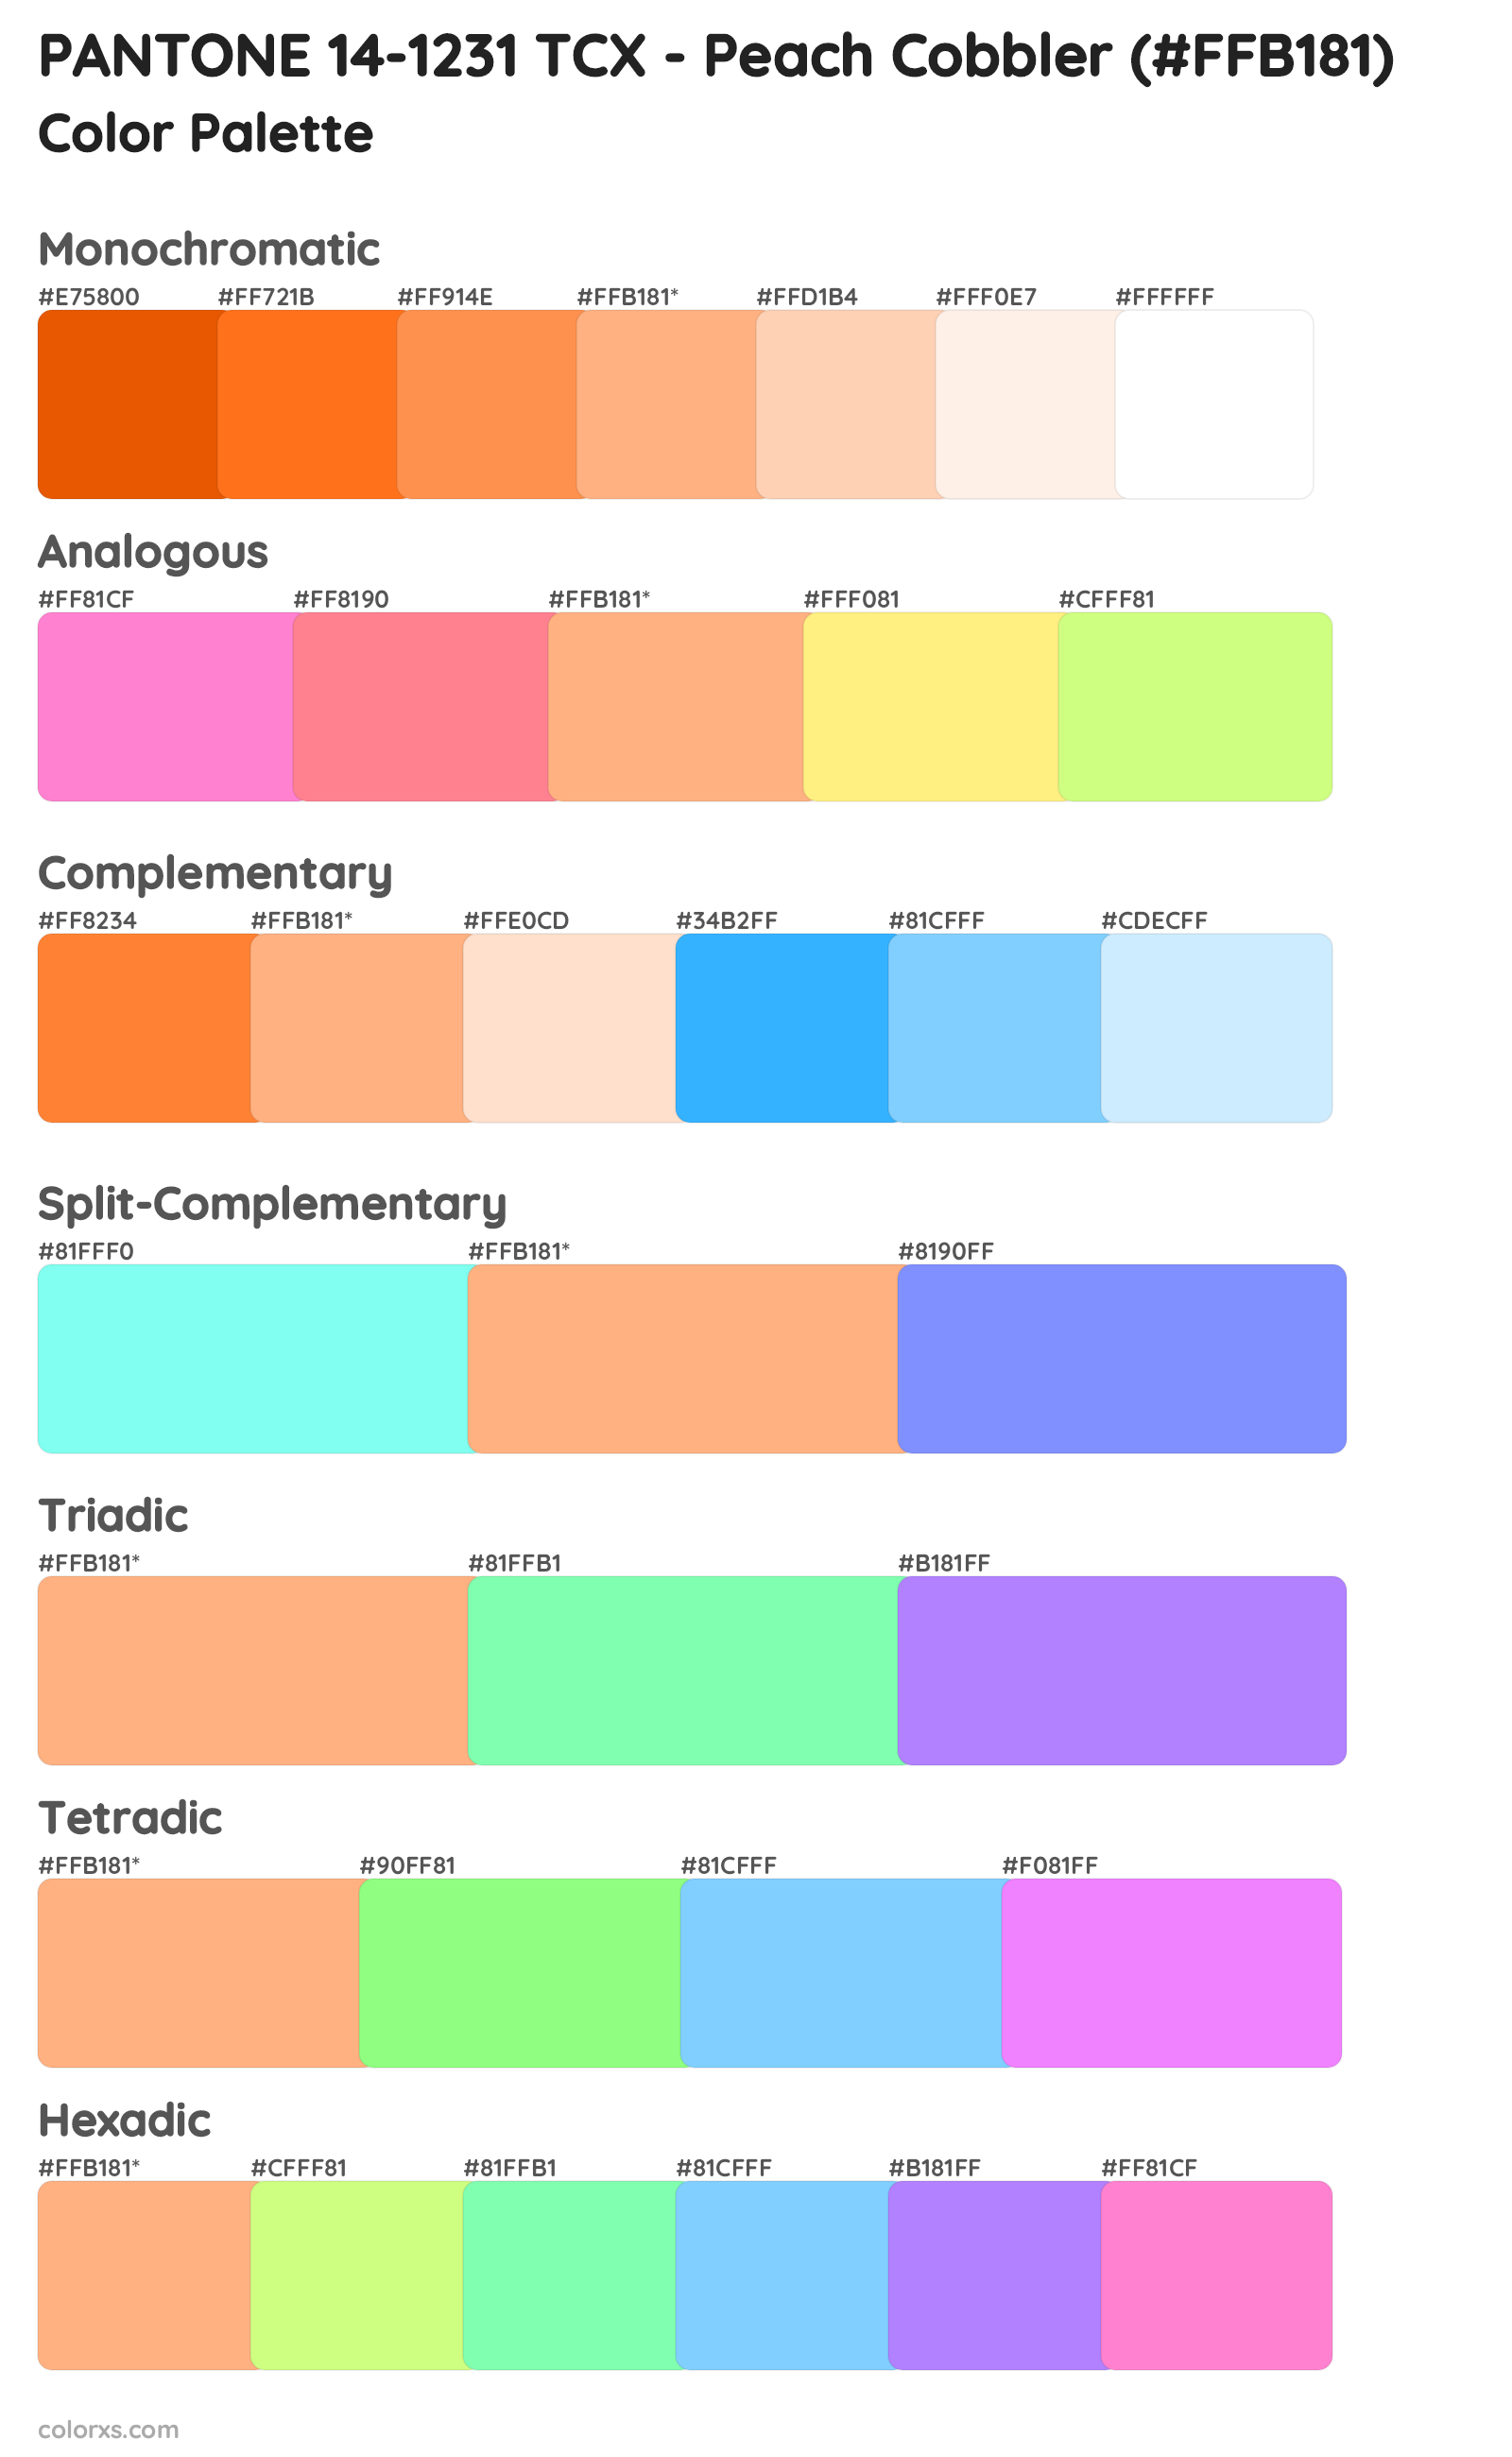 PANTONE 14-1231 TCX - Peach Cobbler Color Scheme Palettes